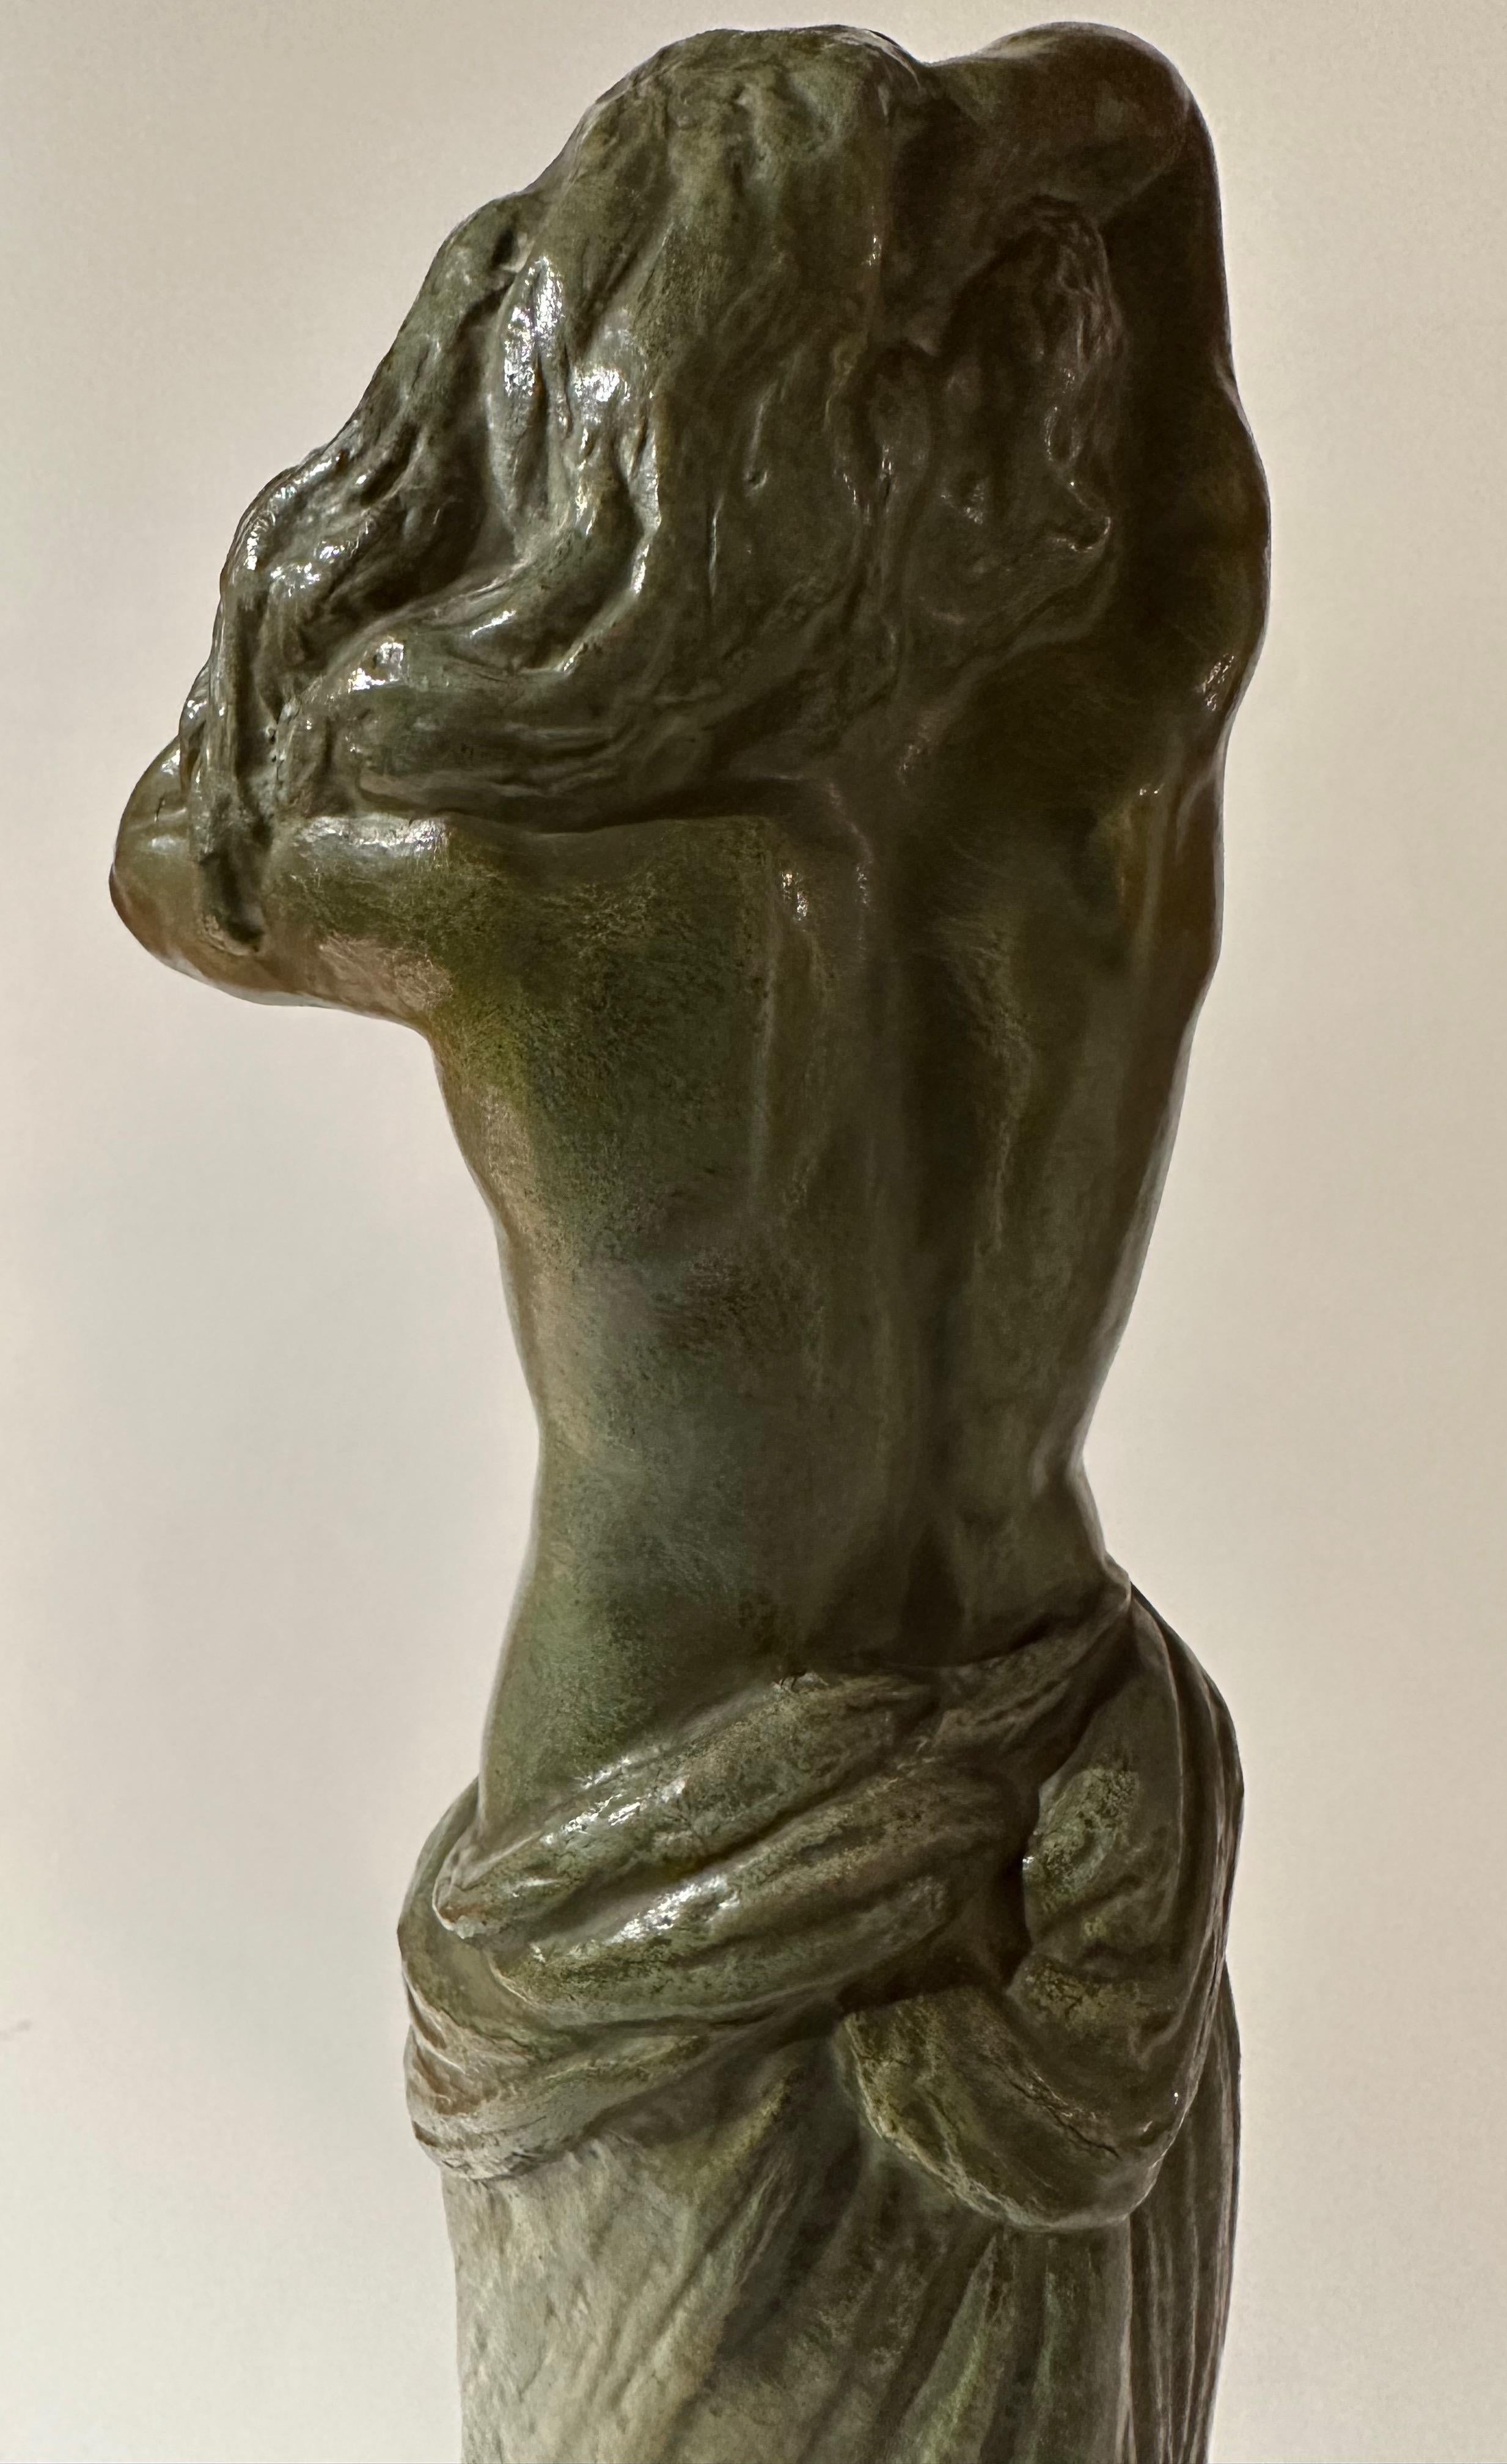 Gori bronze Statue de nu féminin drapé Art déco classique fabriqué en France. Sculpture en bronze patiné vert-de-gris représentant une femme aux seins nus, debout, les mains derrière la tête, montée sur une base en marbre. Pose stylisée des années